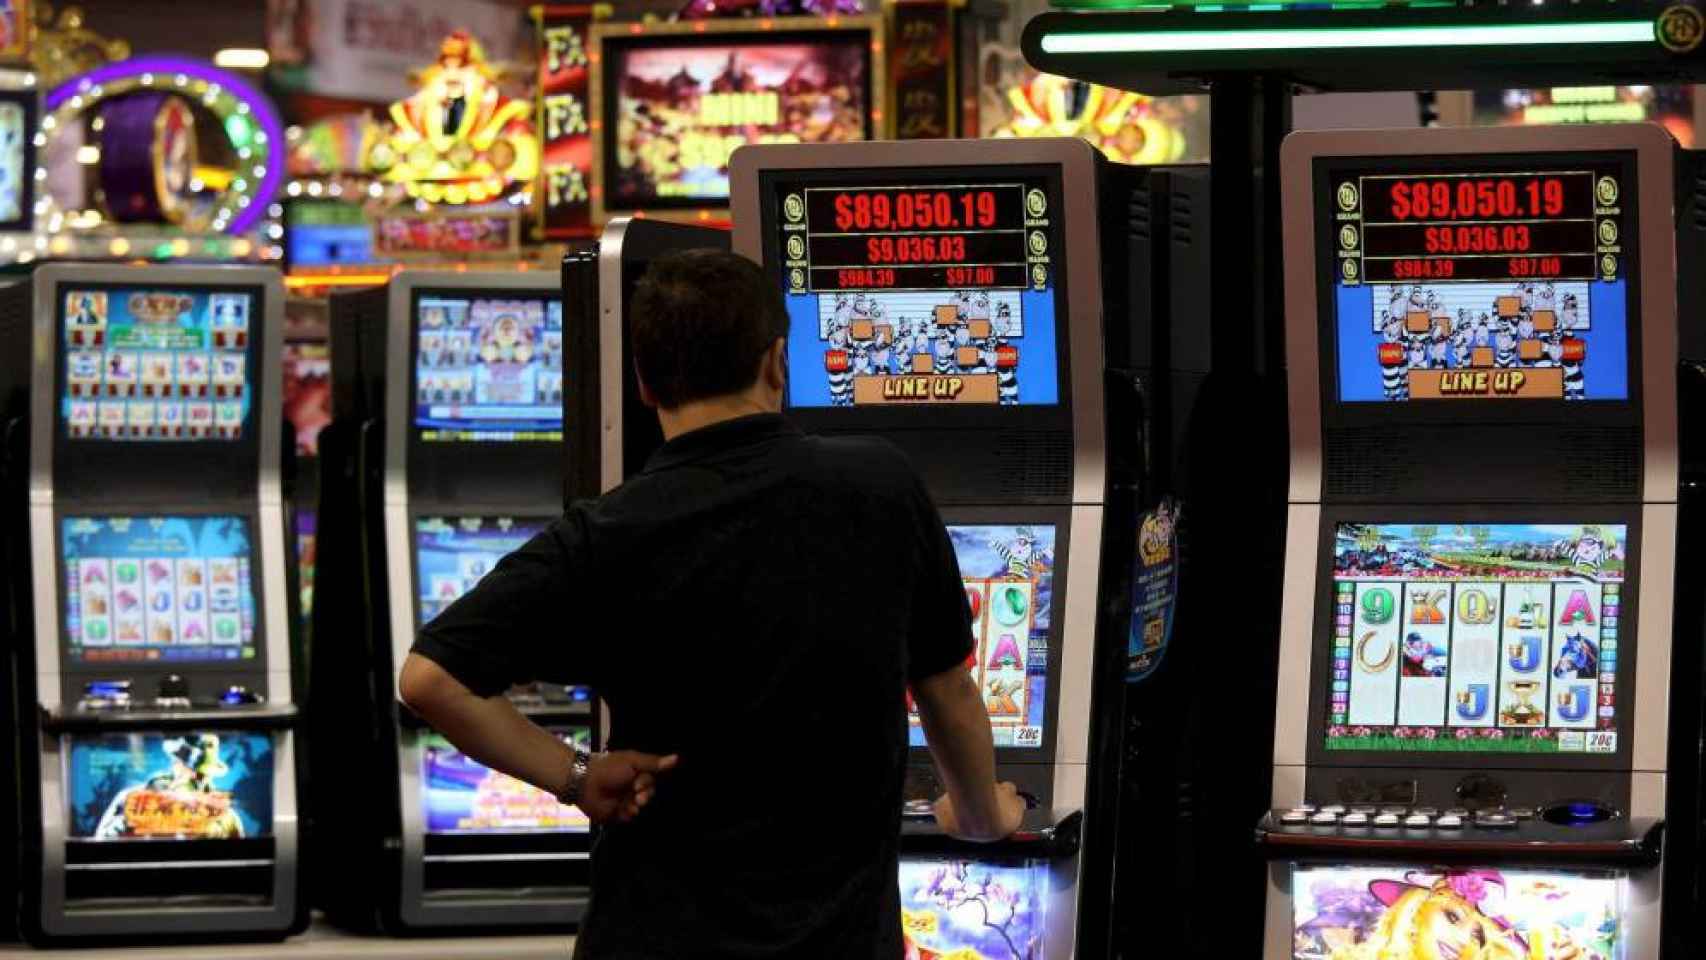 Un hombre juega a unas máquinas recreativas en un casino, en referencia a Cirsa / CG